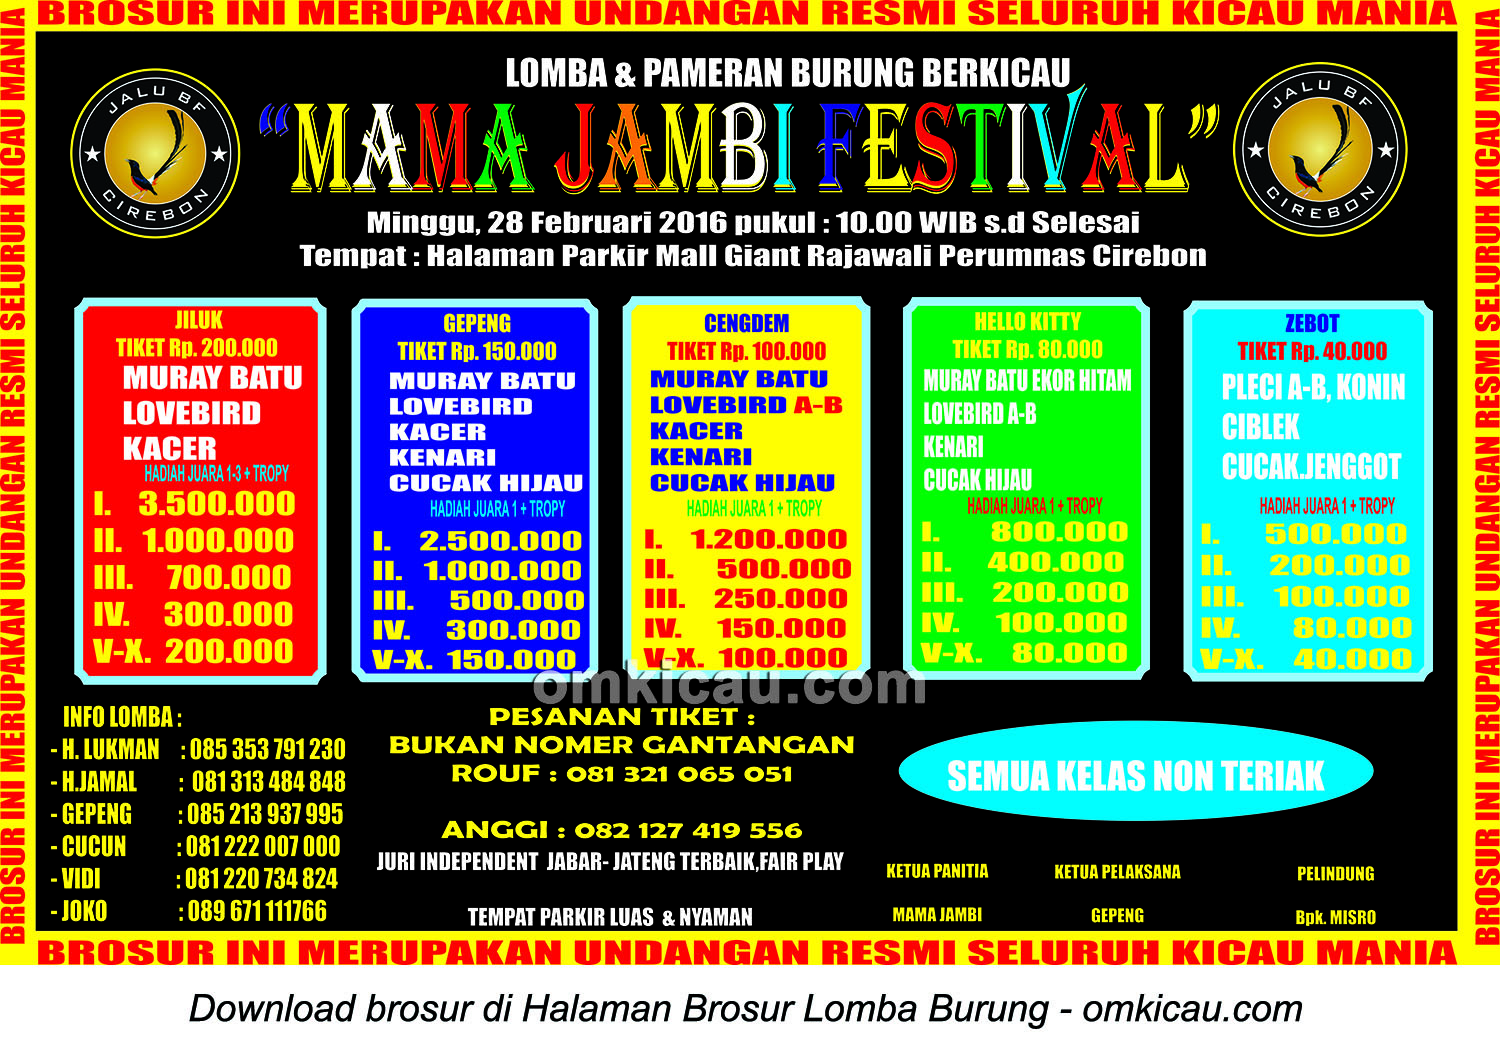 Brosur Lomba Burung Berkicau Mama Jambi Festival, Cirebon, 28 Februari 2016